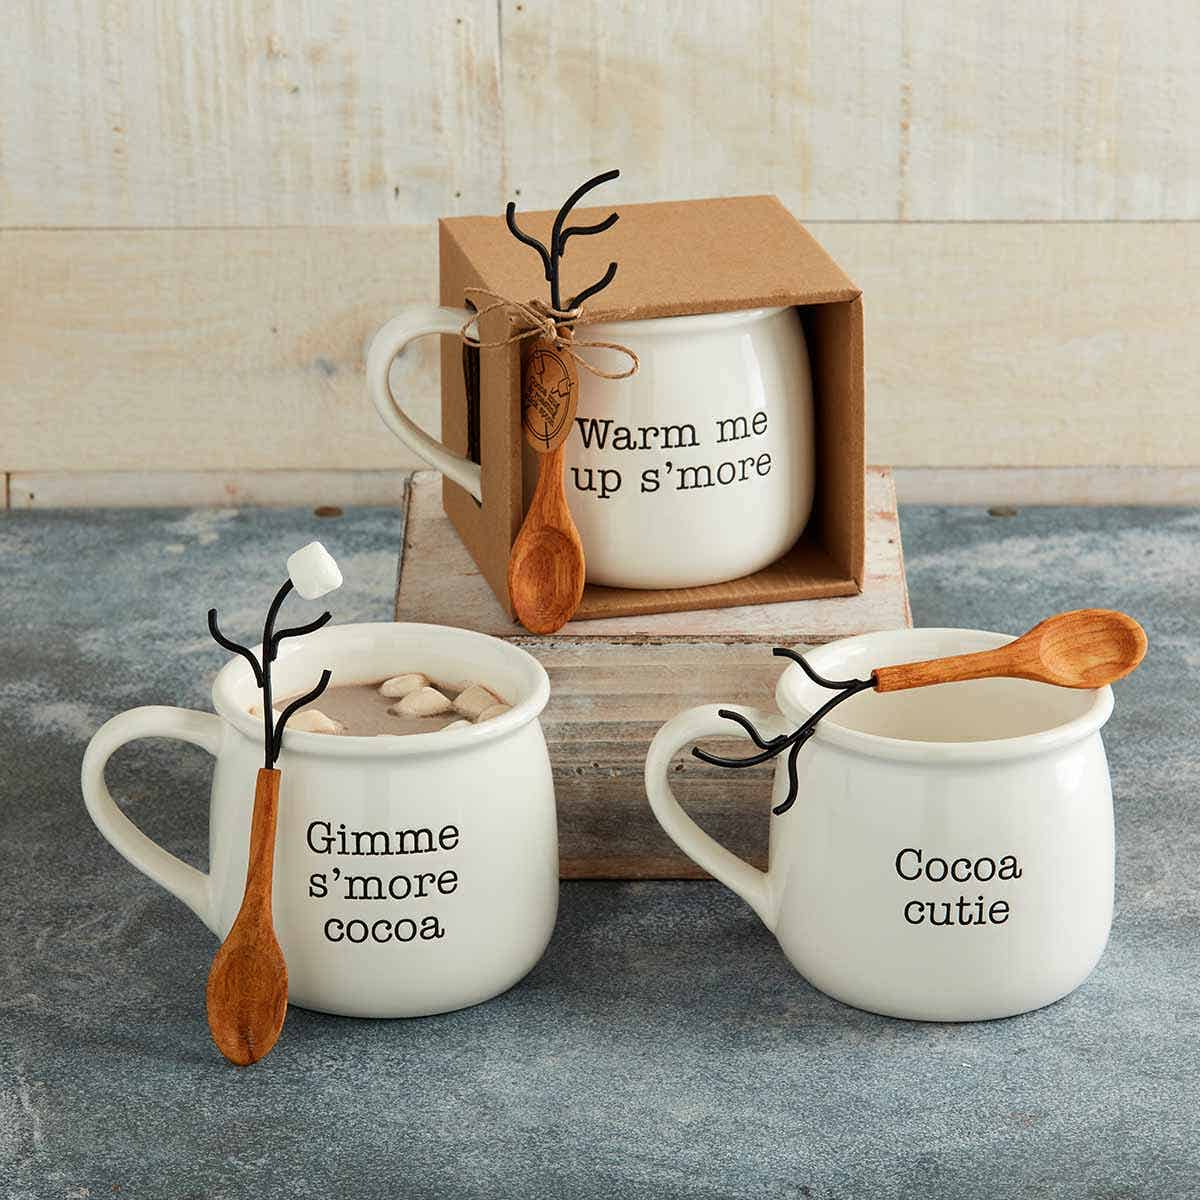 Gimme S'more Hot Chocolate Mug Set